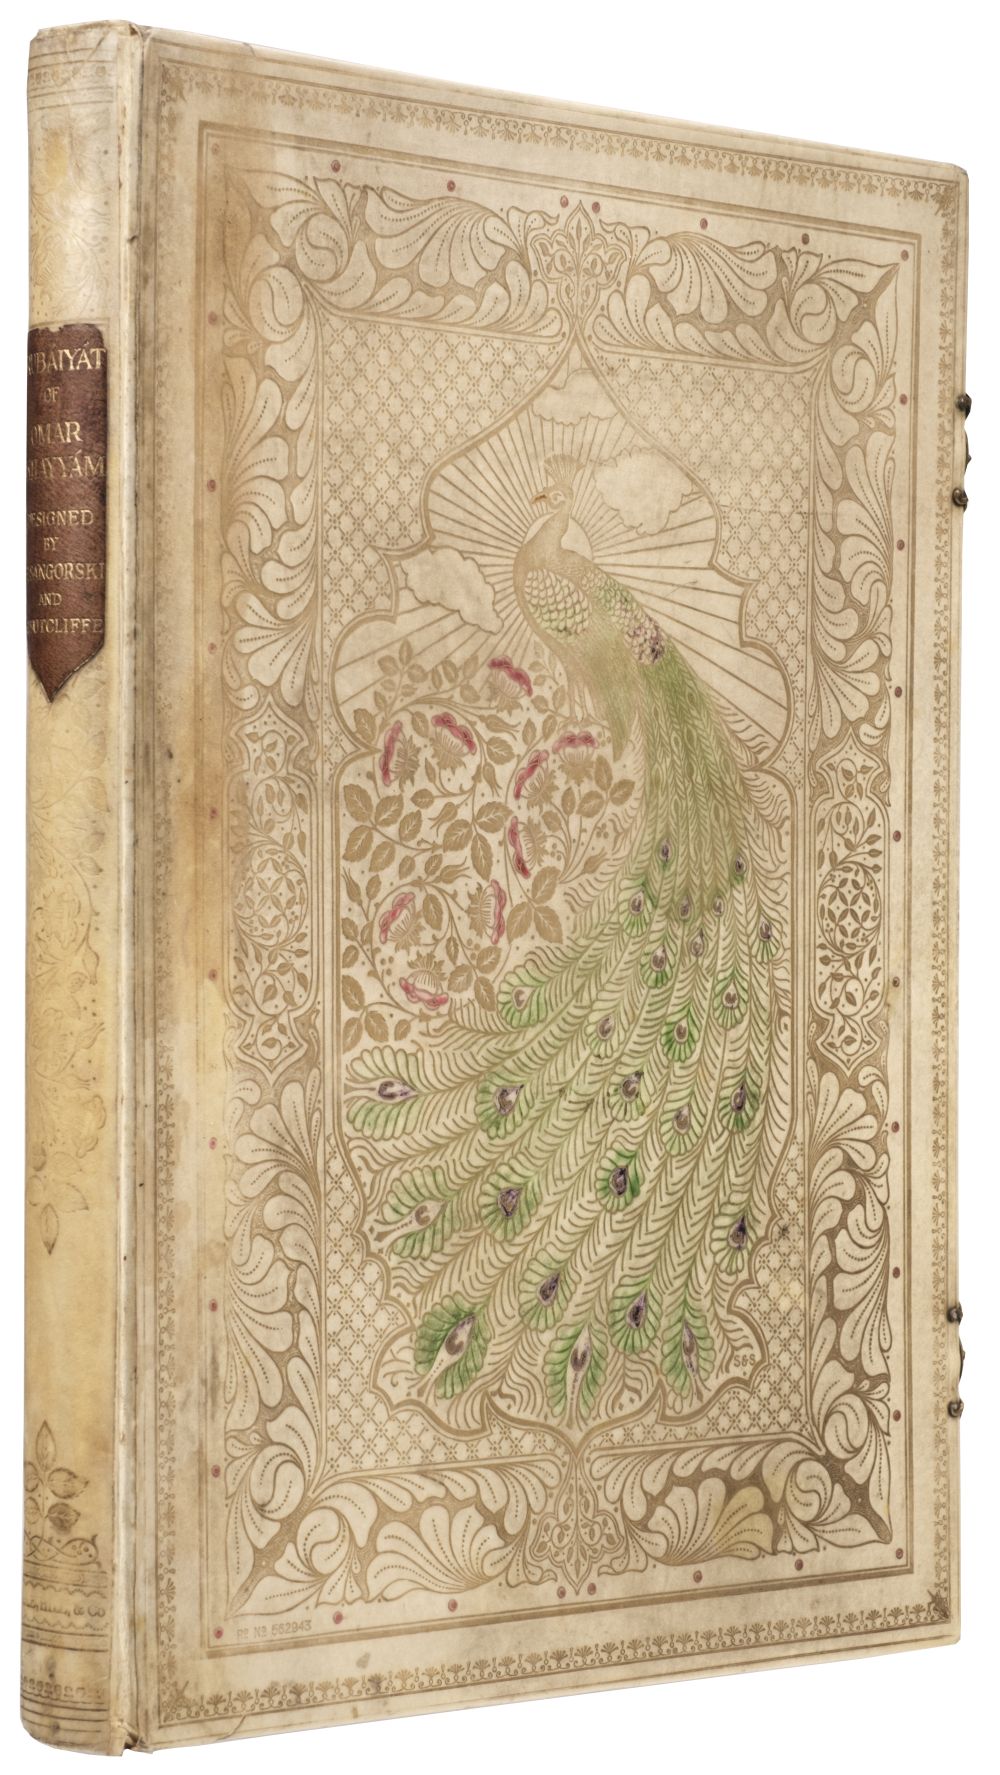 Sangorski & Sutcliffe Binding. Rubaiyat of Omar Khayyam, 1911 - Image 3 of 15